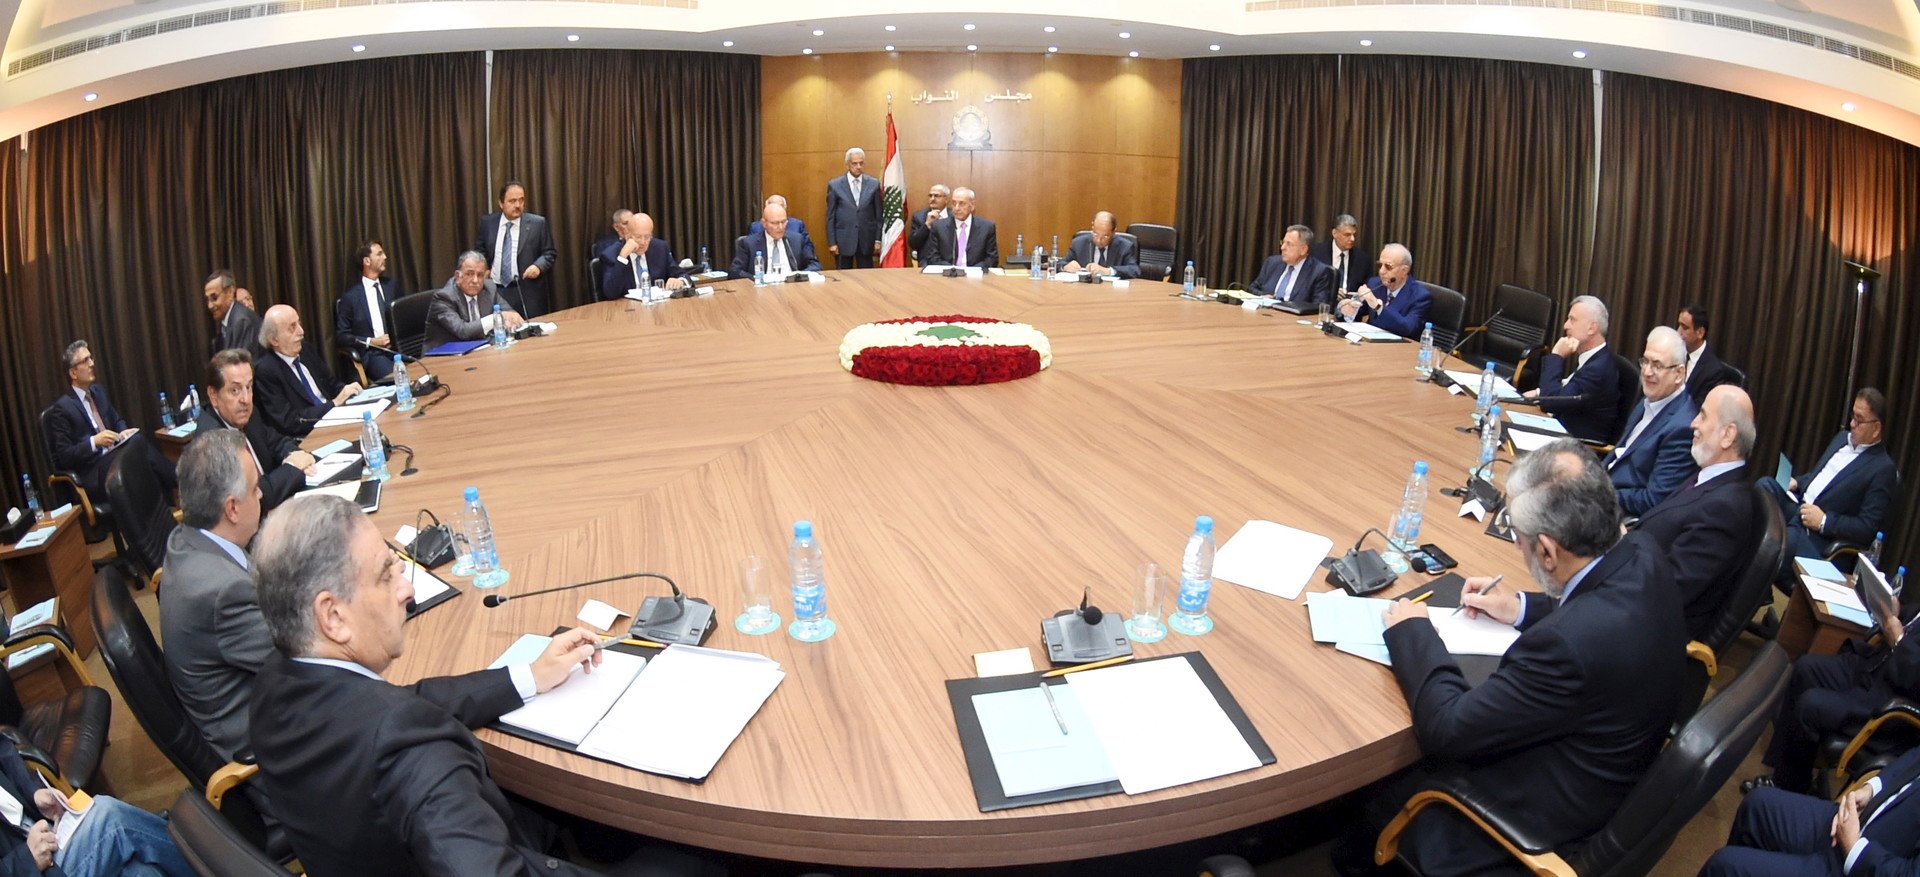 مجلس الوزراء اللبناني يقر خطة للخروج من أزمة النفايات